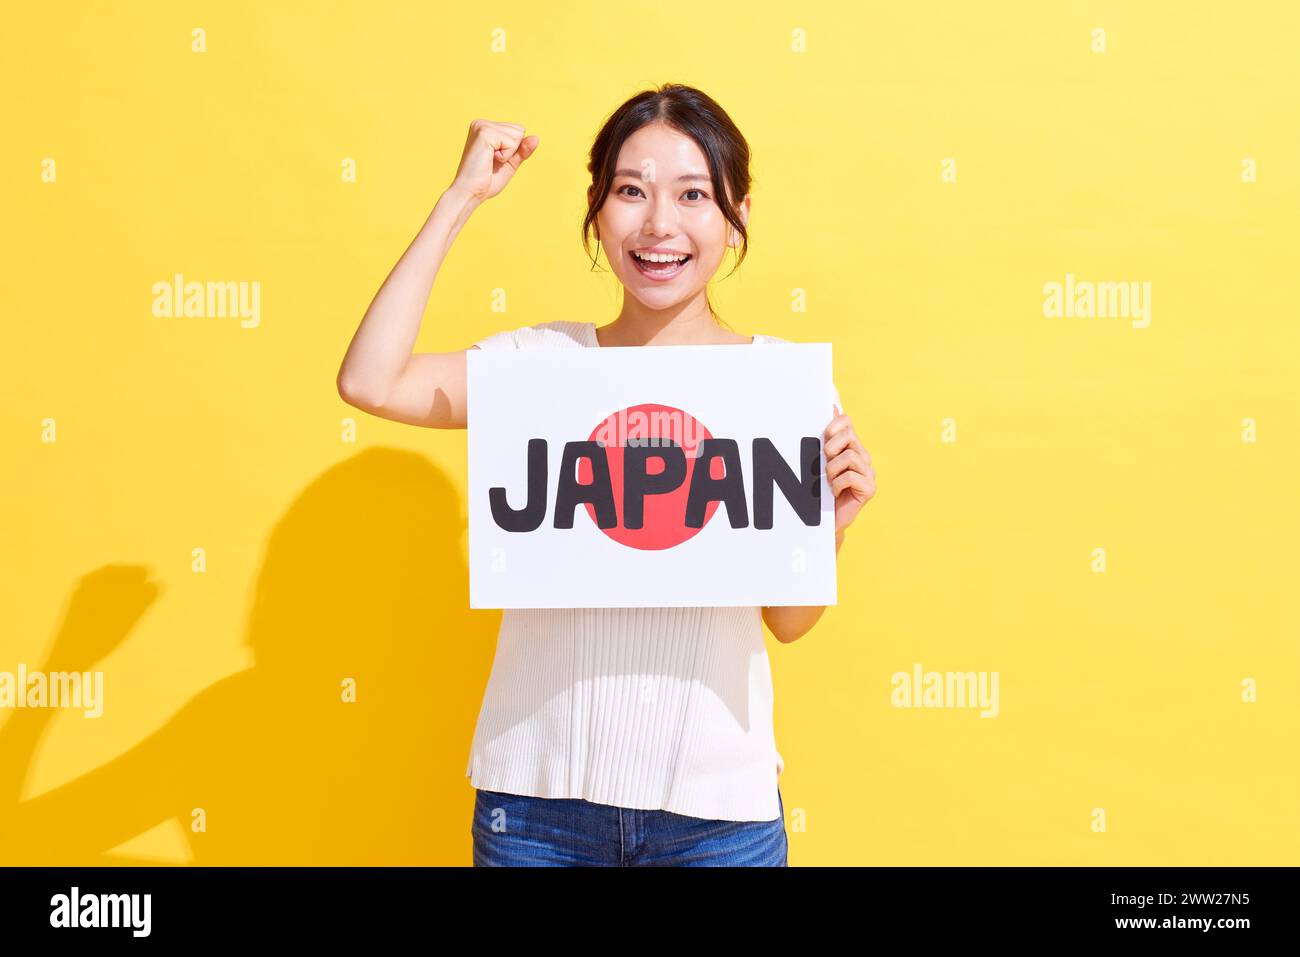 Femme japonaise tenant le signe avec le texte japonais sur fond jaune Banque D'Images